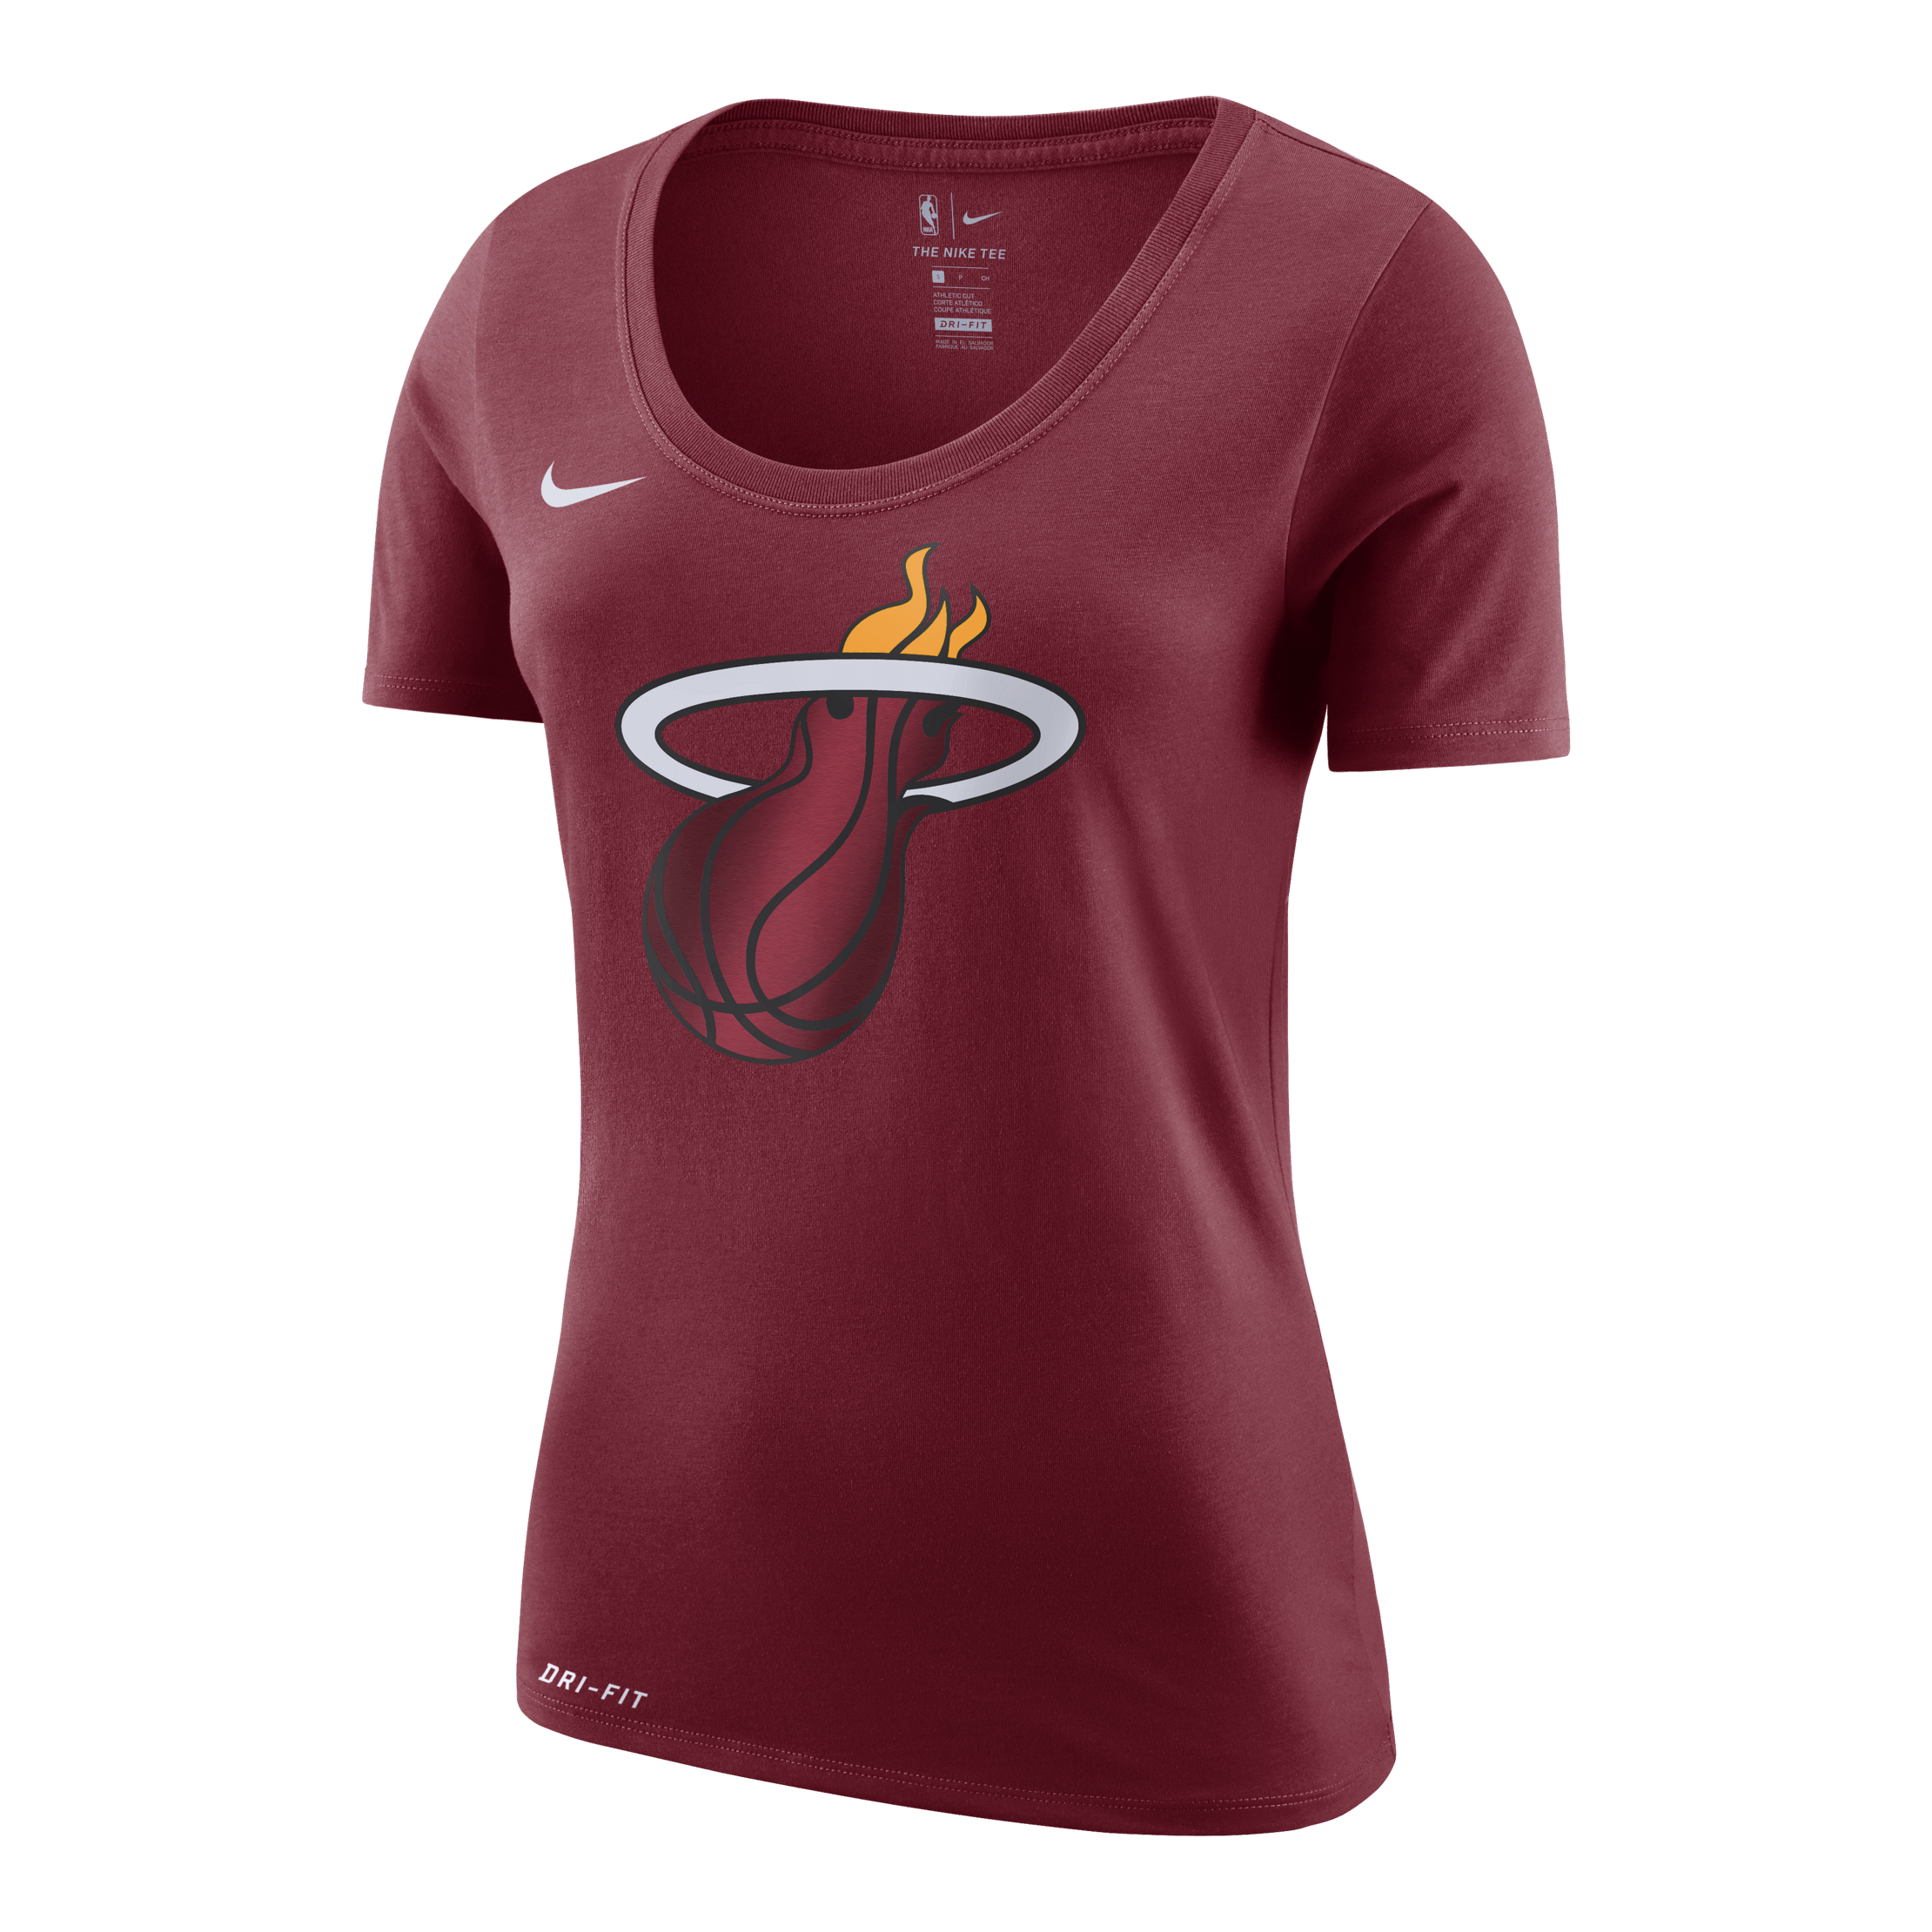 NikeStore Logo - Nike Miami HEAT Ladies Dry-FIT Logo Tee